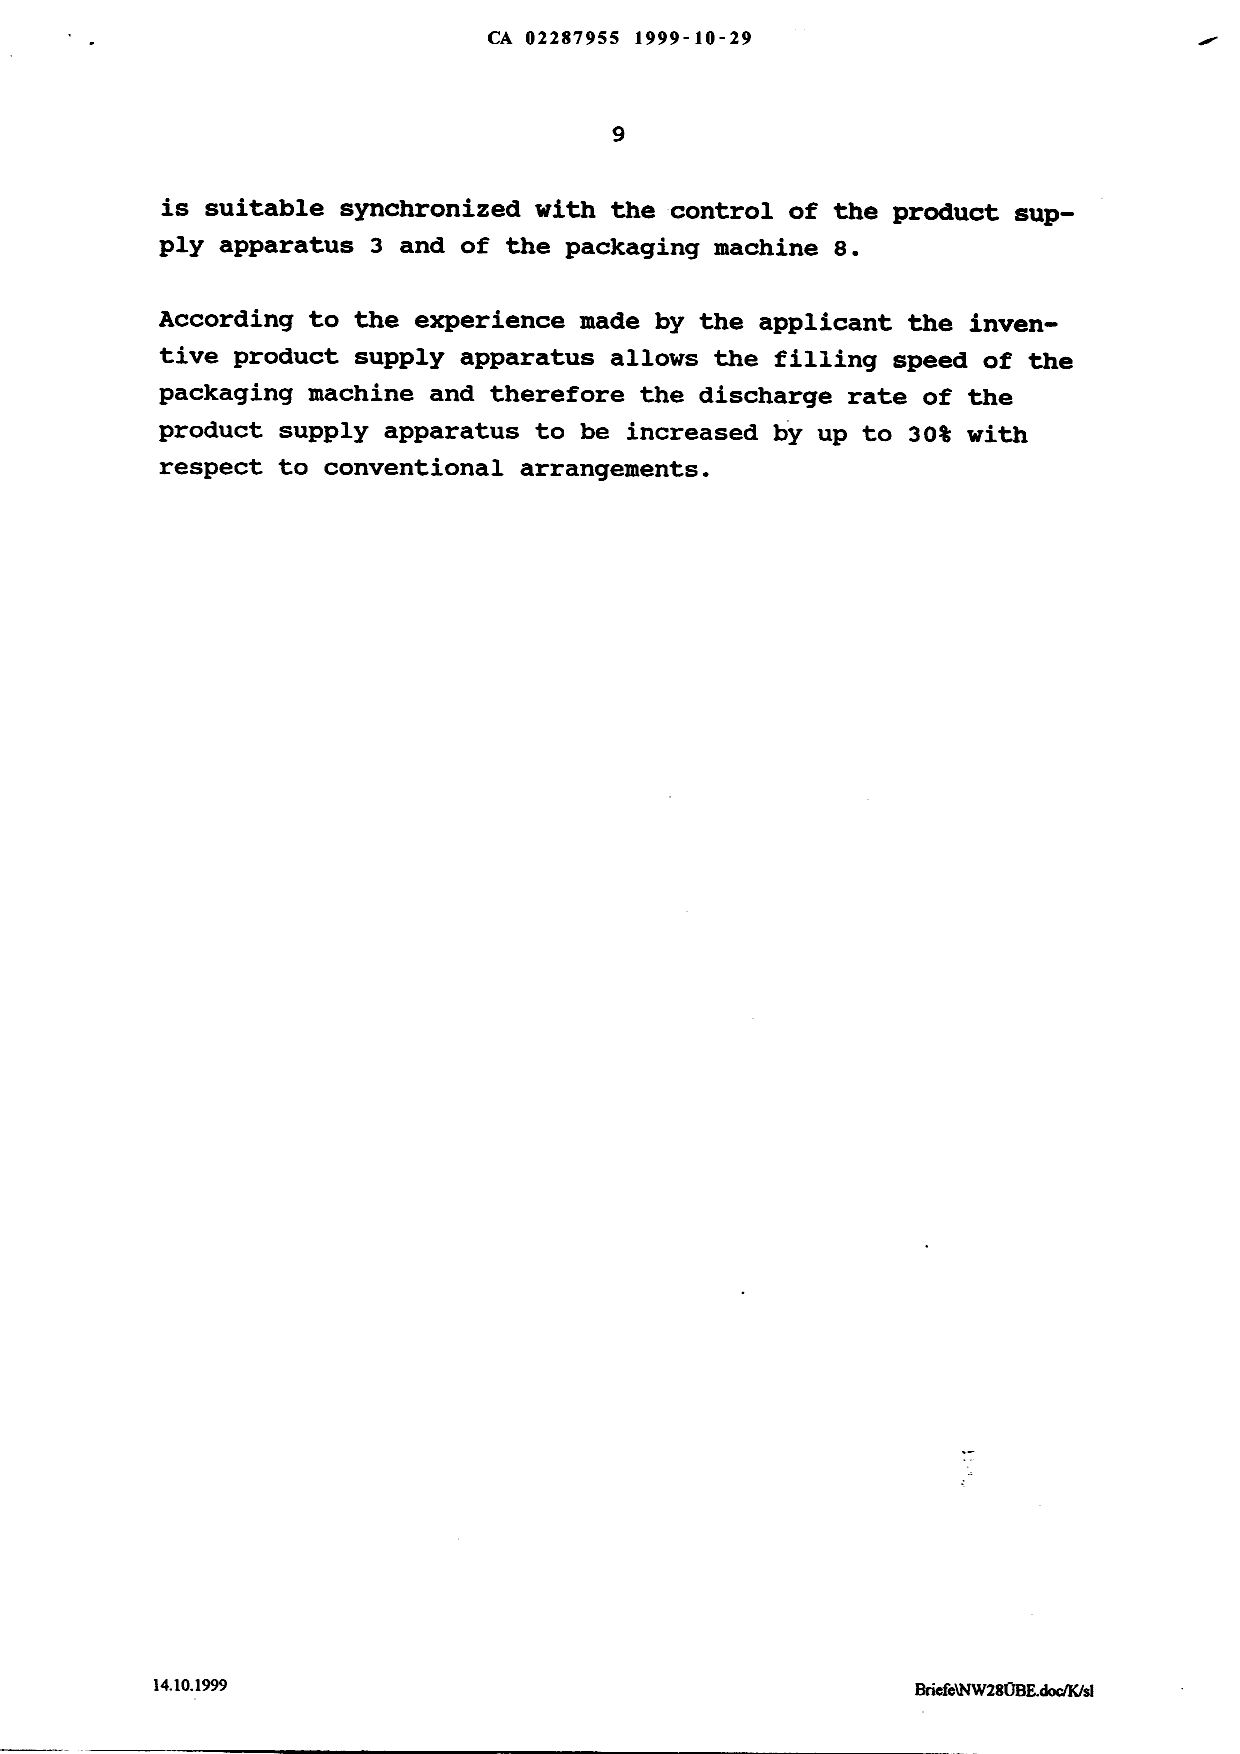 Canadian Patent Document 2287955. Description 20070216. Image 9 of 9